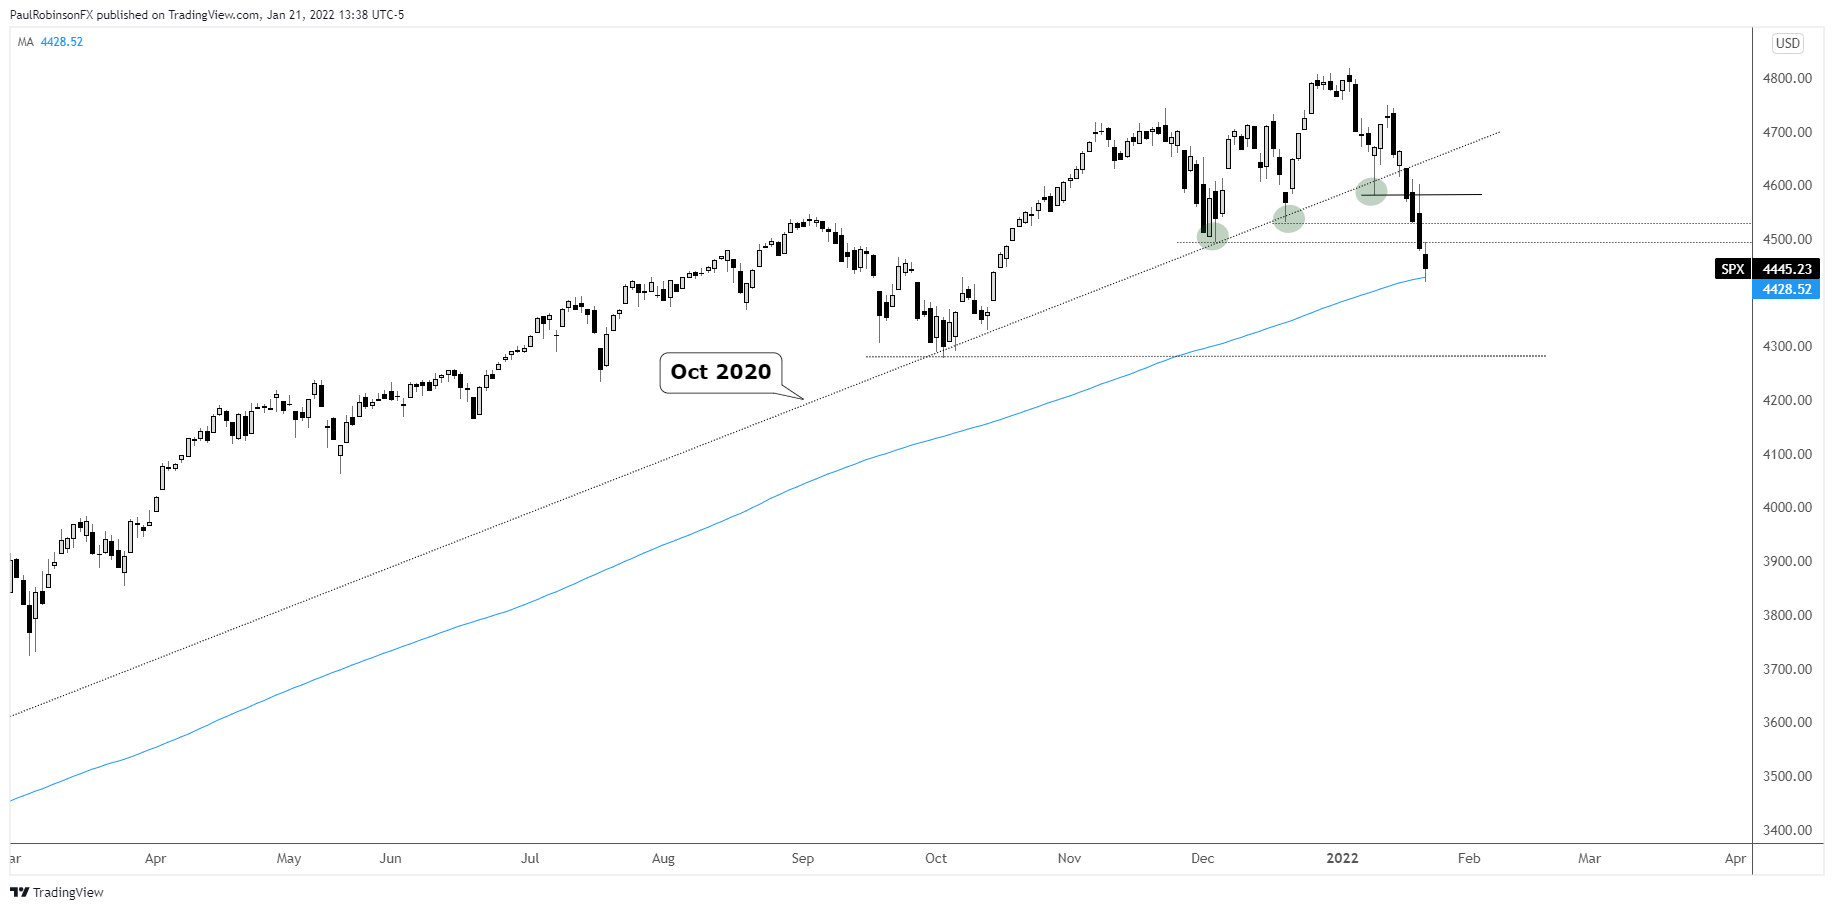 Jones today chart dow Dow Jones